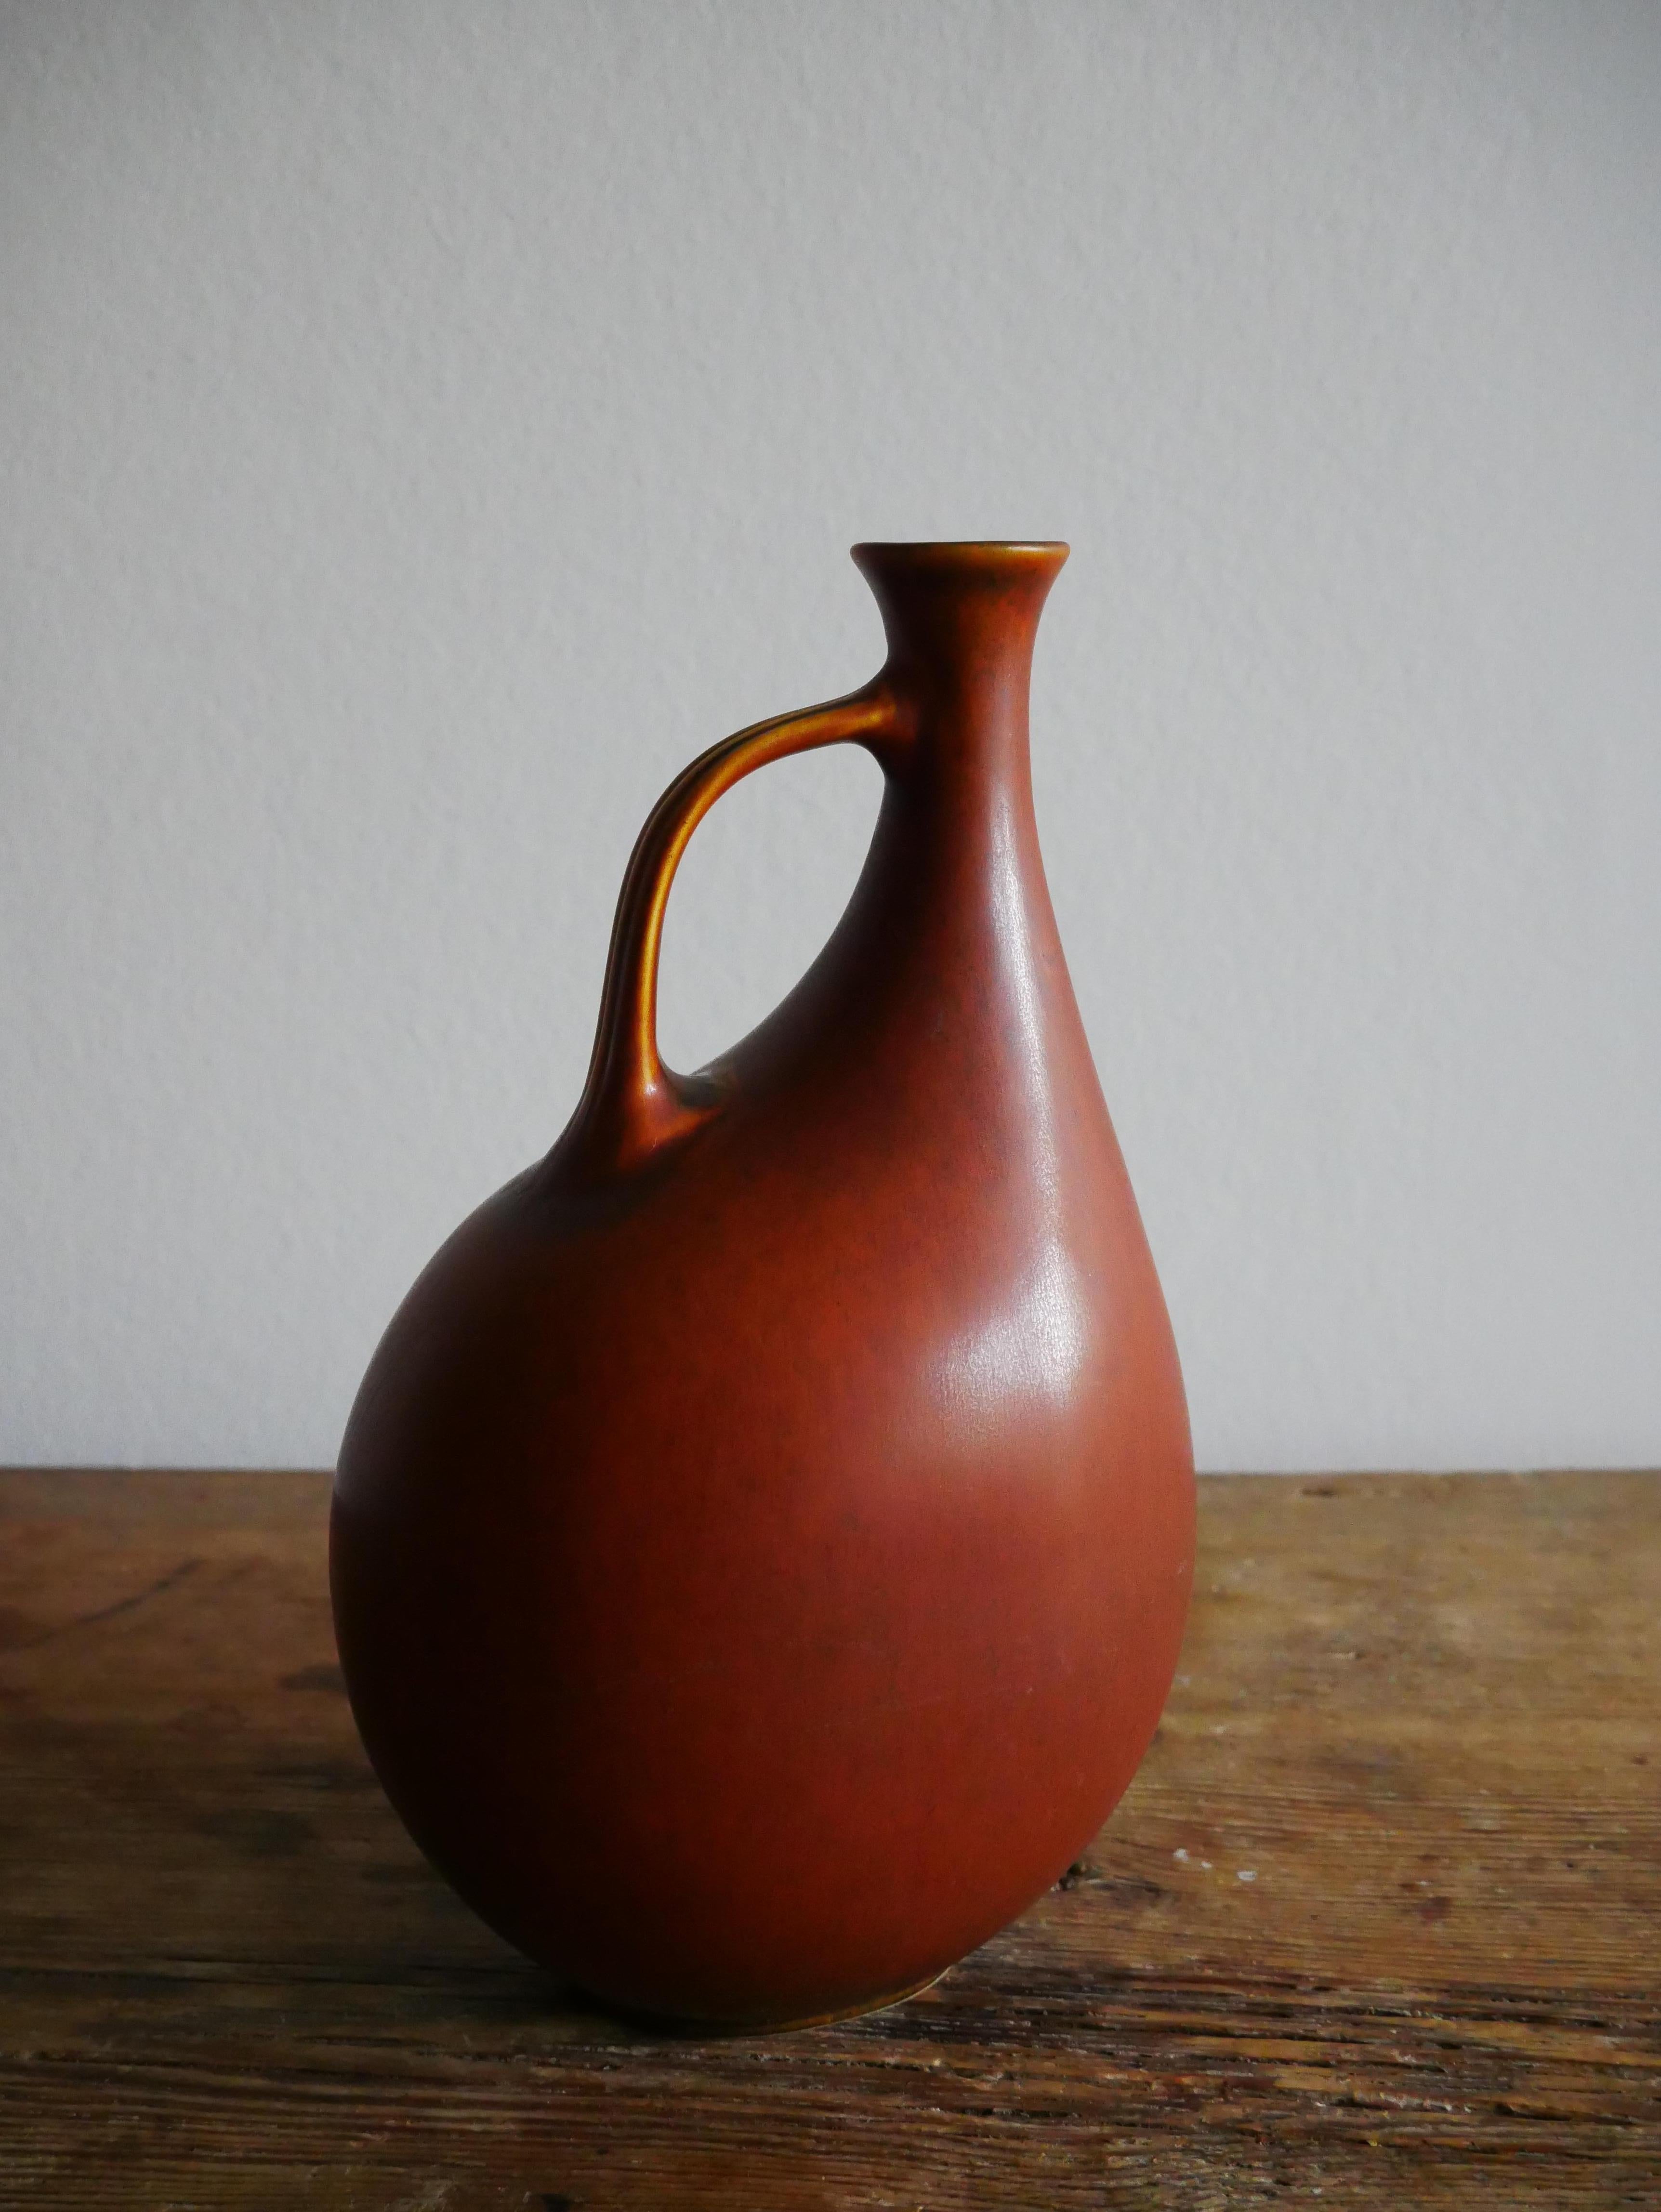 Der schwedische Designer Gunnar Nylund hat diese aufregende 60er-Jahre-Vase für die dänische Töpferei Nymolle entworfen. Er entwarf nach seiner Zeit bei Rörstrand und parallel zu seiner Tätigkeit für Strömbergshyttan seit 1959 für Nymölle. Das